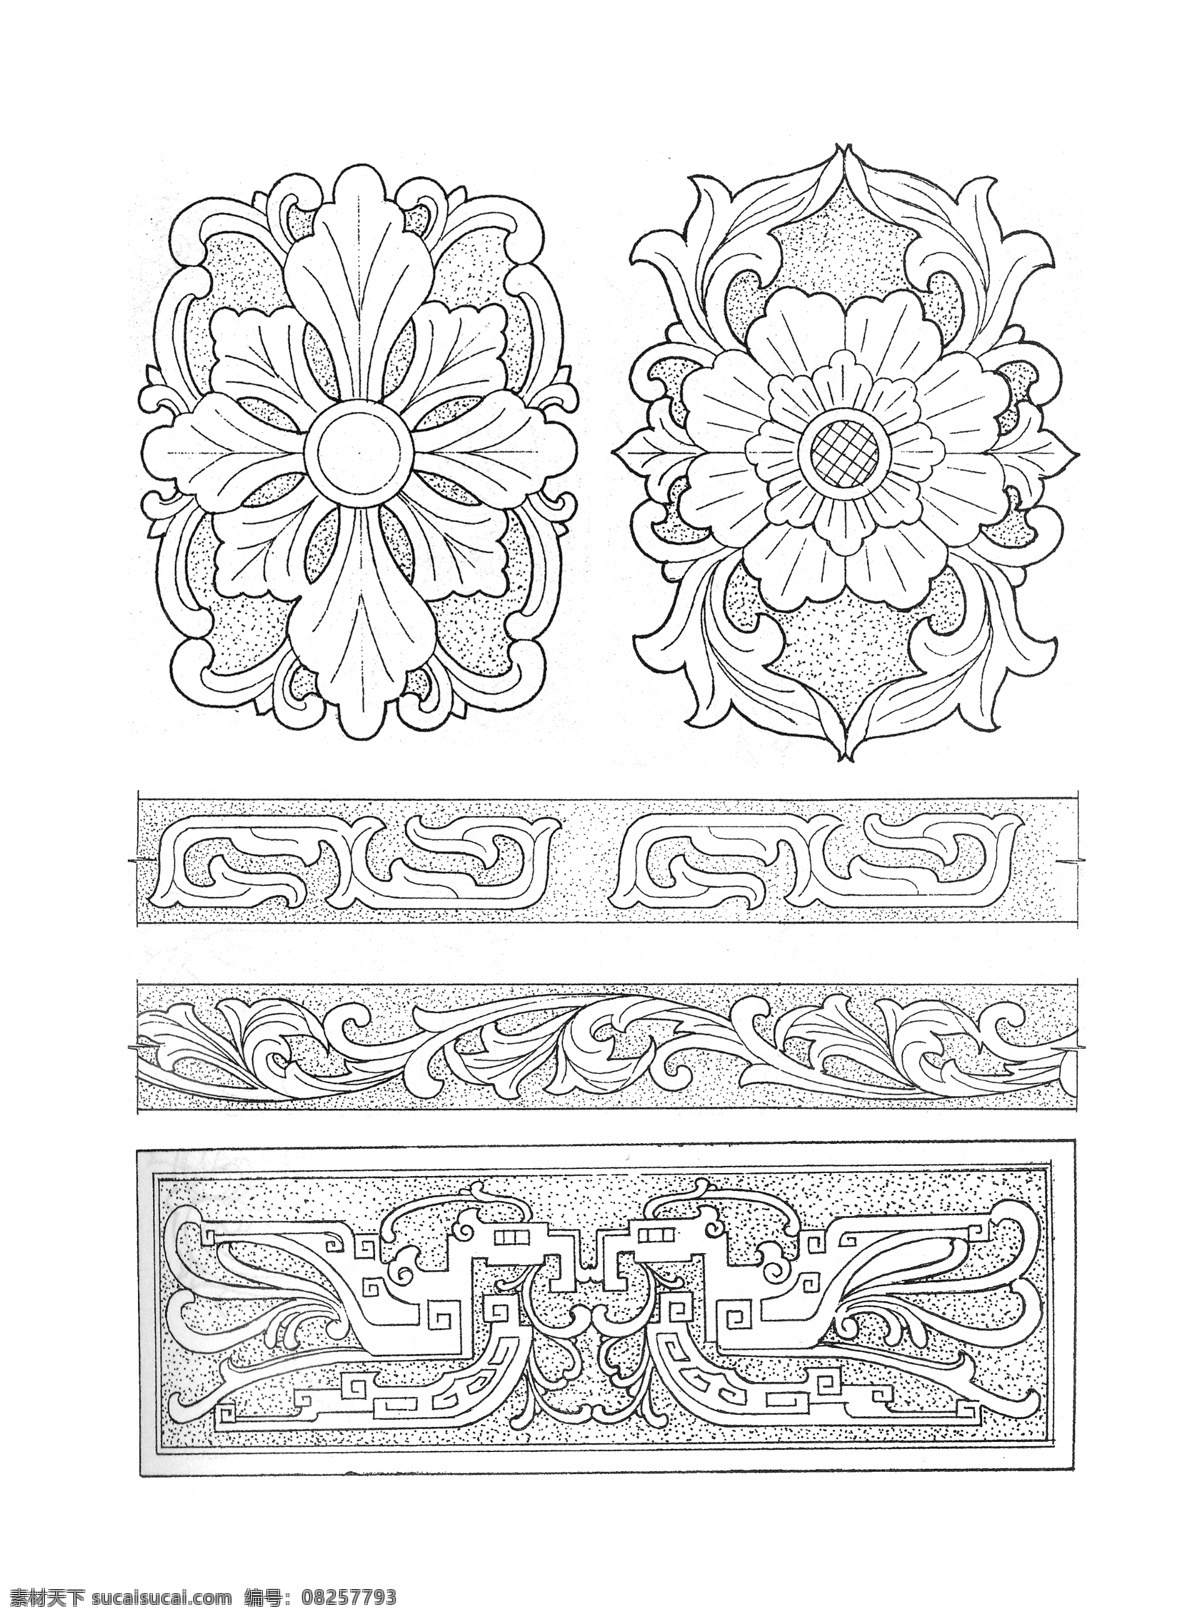 木雕 家具 建筑 线 稿 镂空 图案 花纹 古典花纹 古代雕刻 线稿 黑白 白色